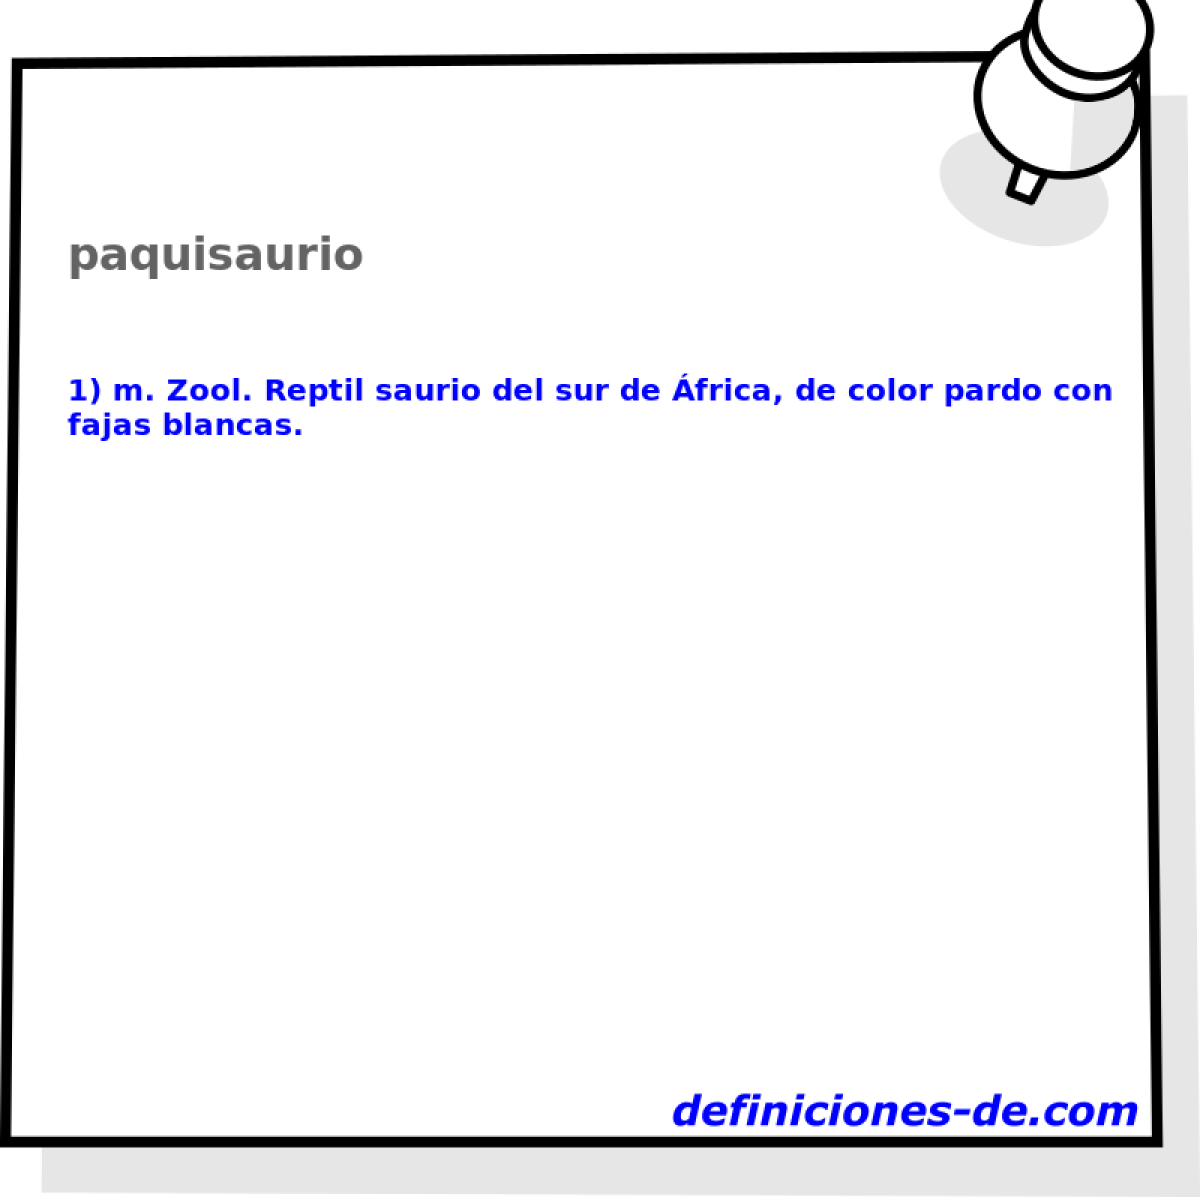 paquisaurio 